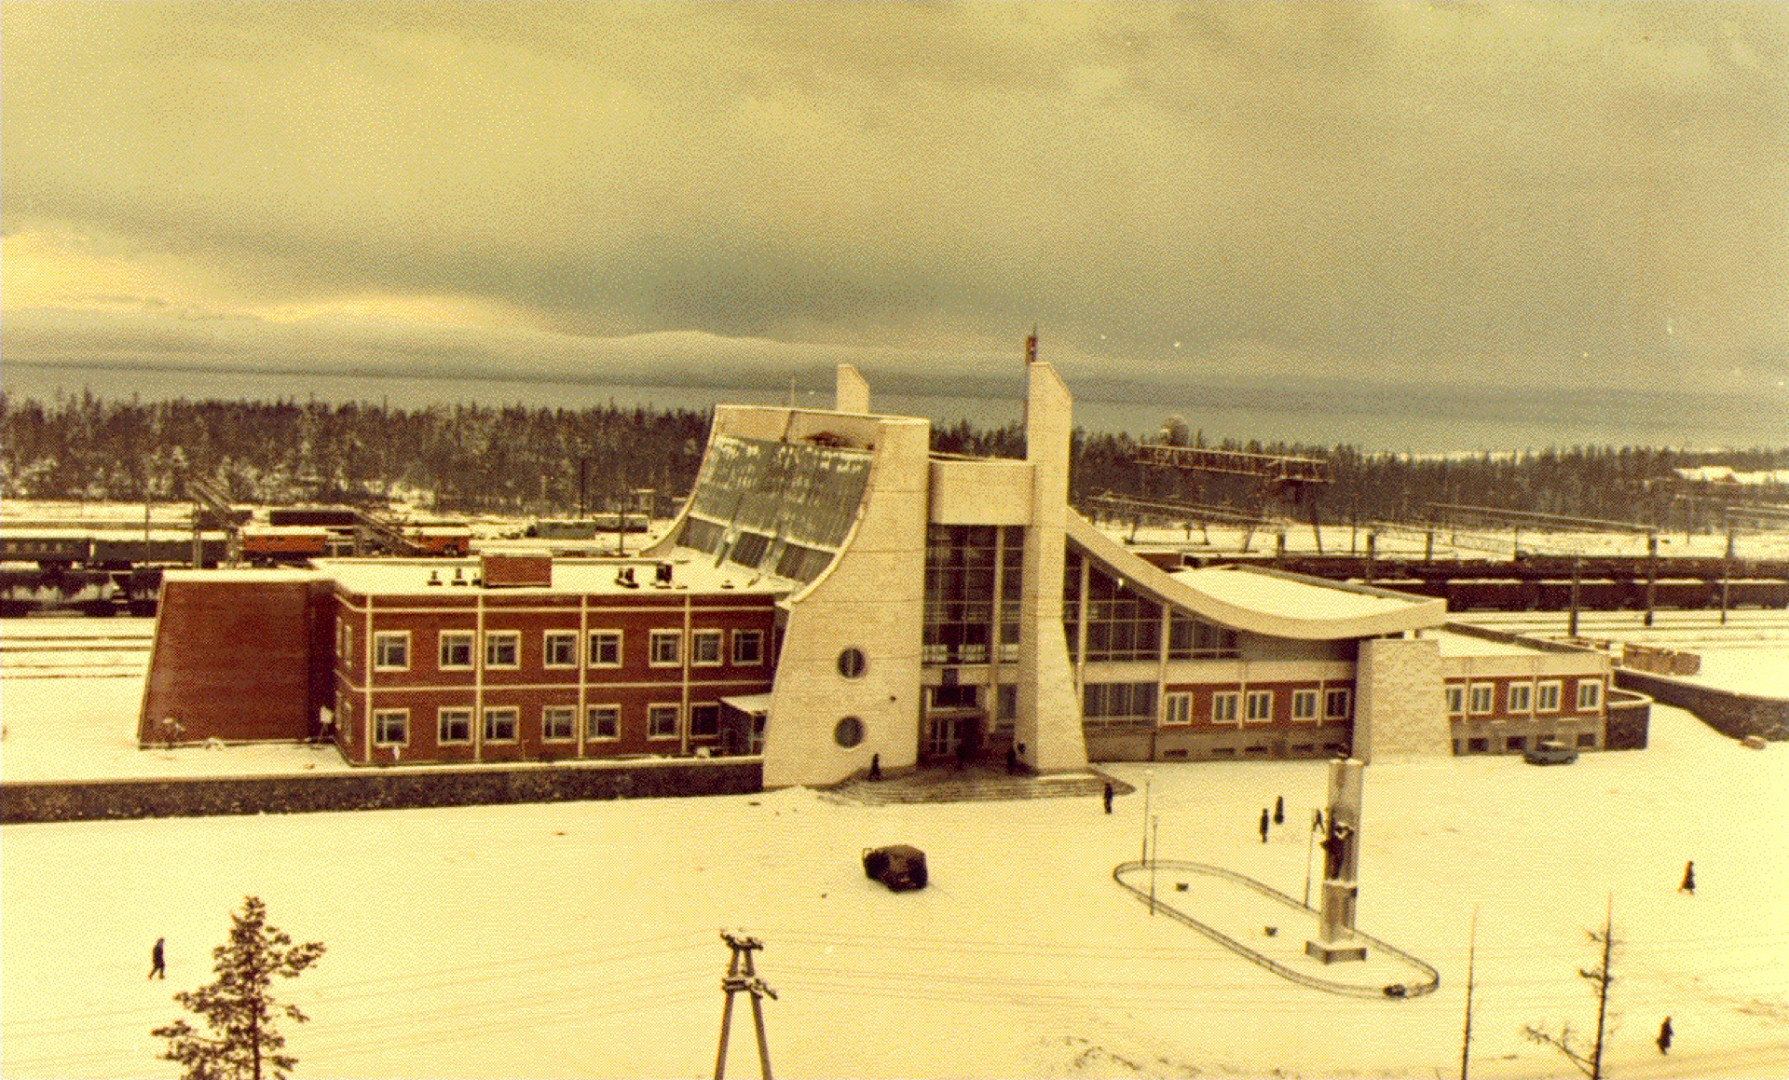 Вокзал Северобайкальска, города заложенного благодаря строительству БАМа. Фото из собрания Исторического музея